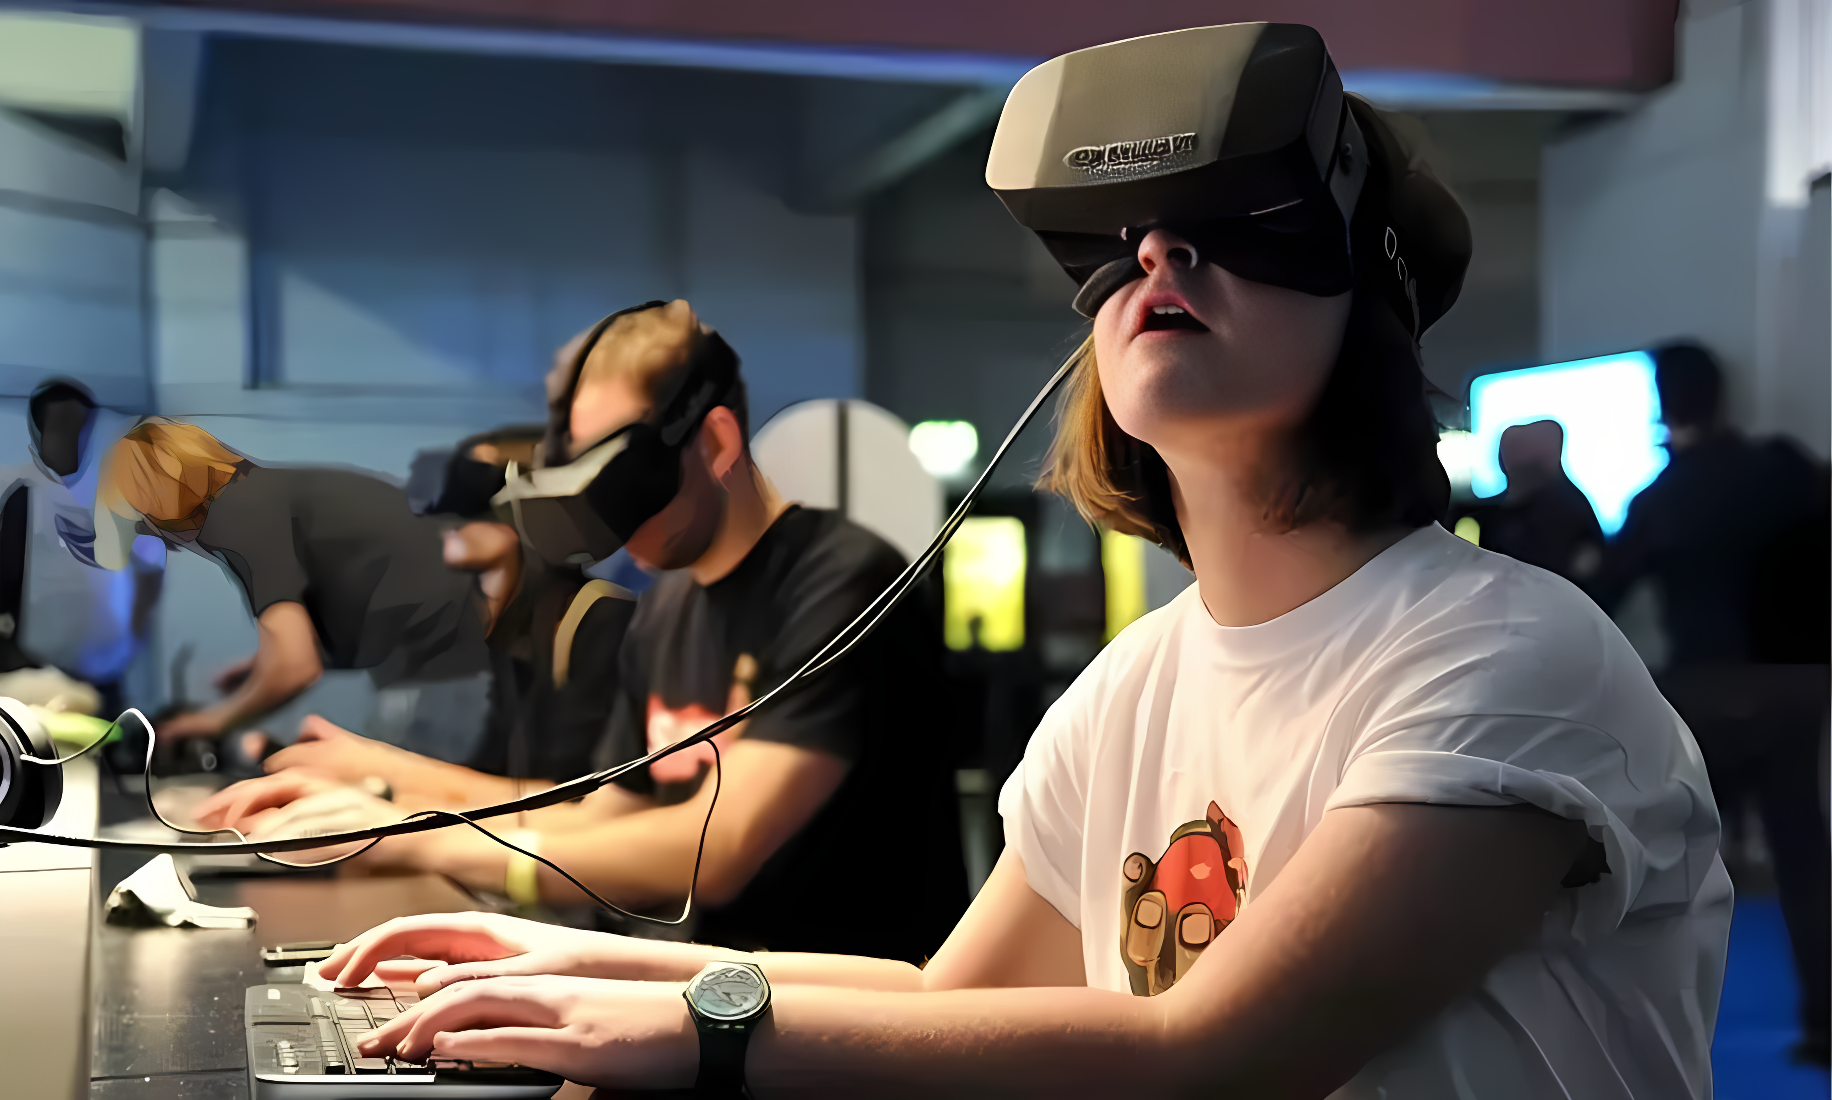 图片中几人戴着虚拟现实头盔，专注体验VR技术。背景模糊，显现科技活动氛围。其中一人正操作键盘。